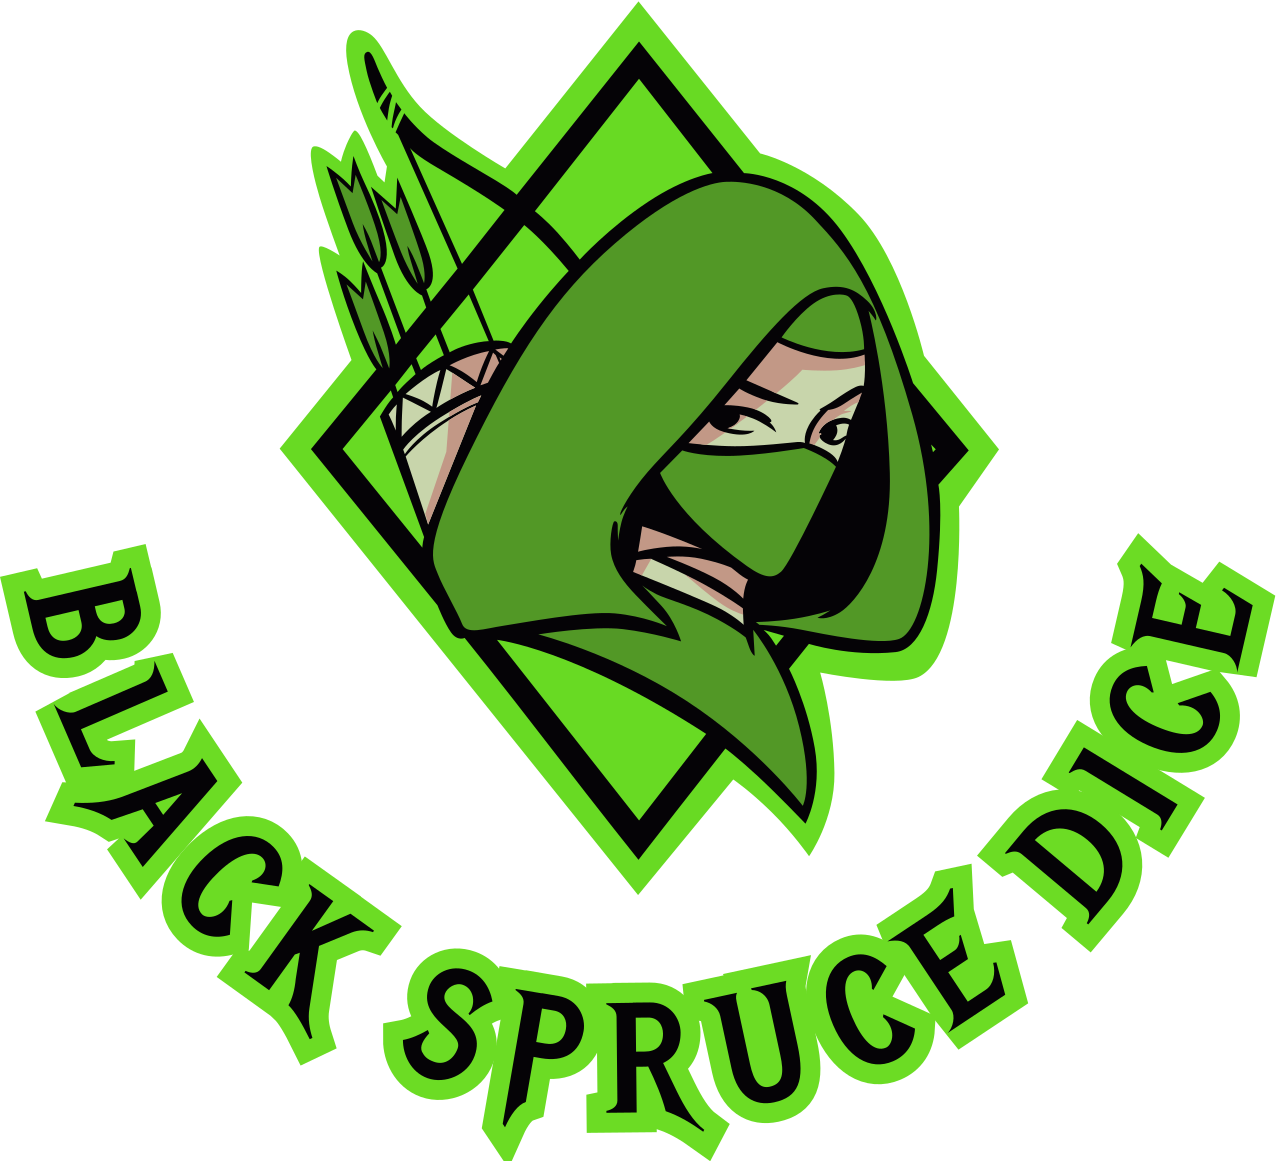 black spruce dice's logo